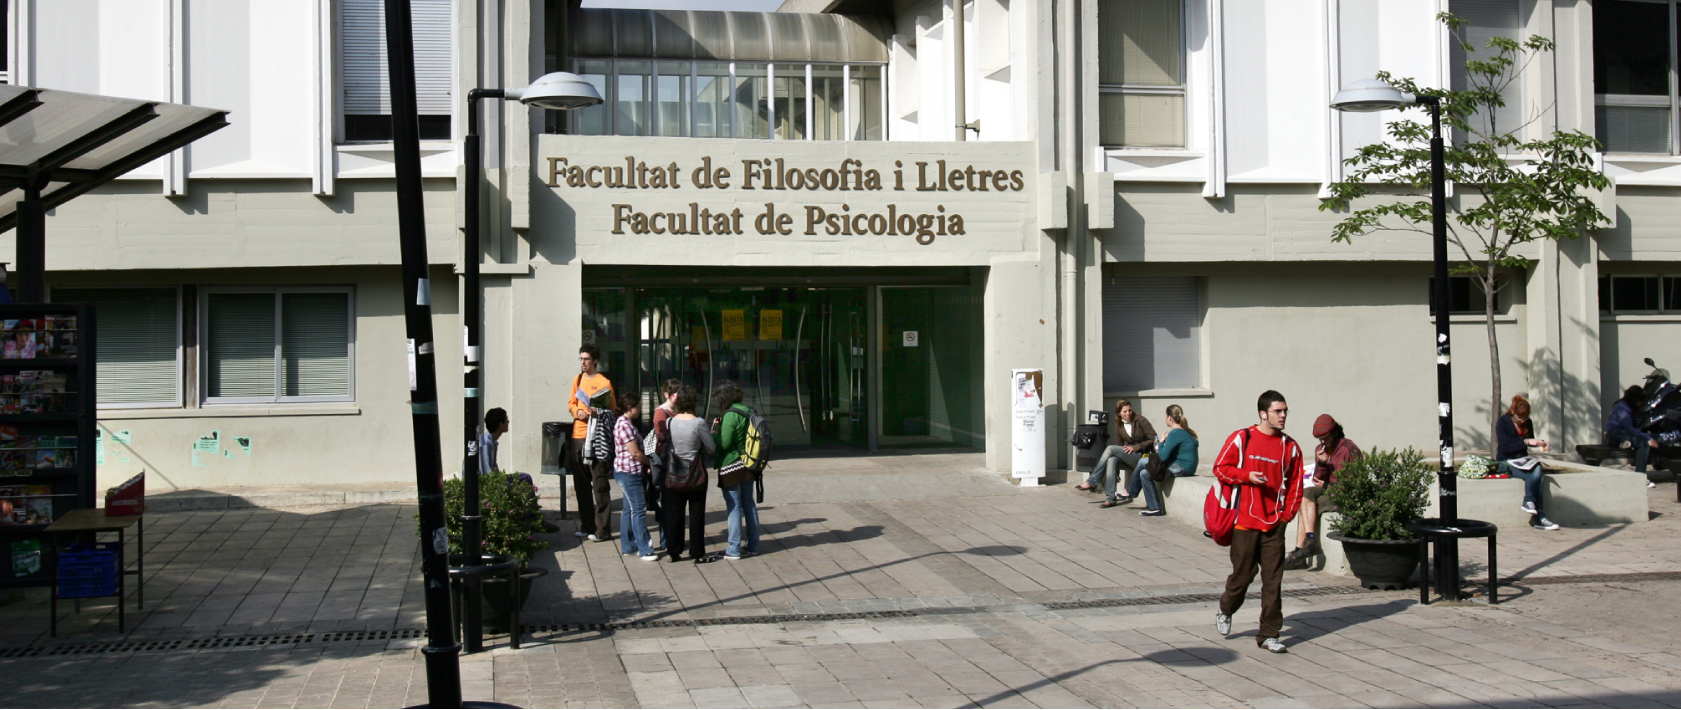 Facultad de Filosofía y Letras - Psicología de la Universidad Autónoma de Barcelona